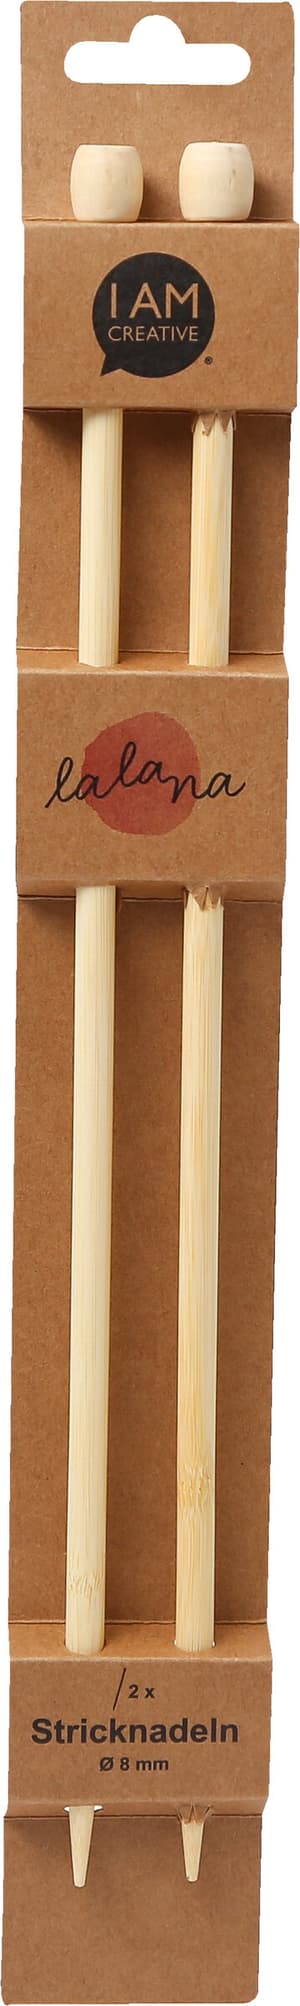 Stricknadeln, Bambus-Stricknadeln für Anfänger und Experten, Natur, ø 8 x 350 mm, 2 Stk.